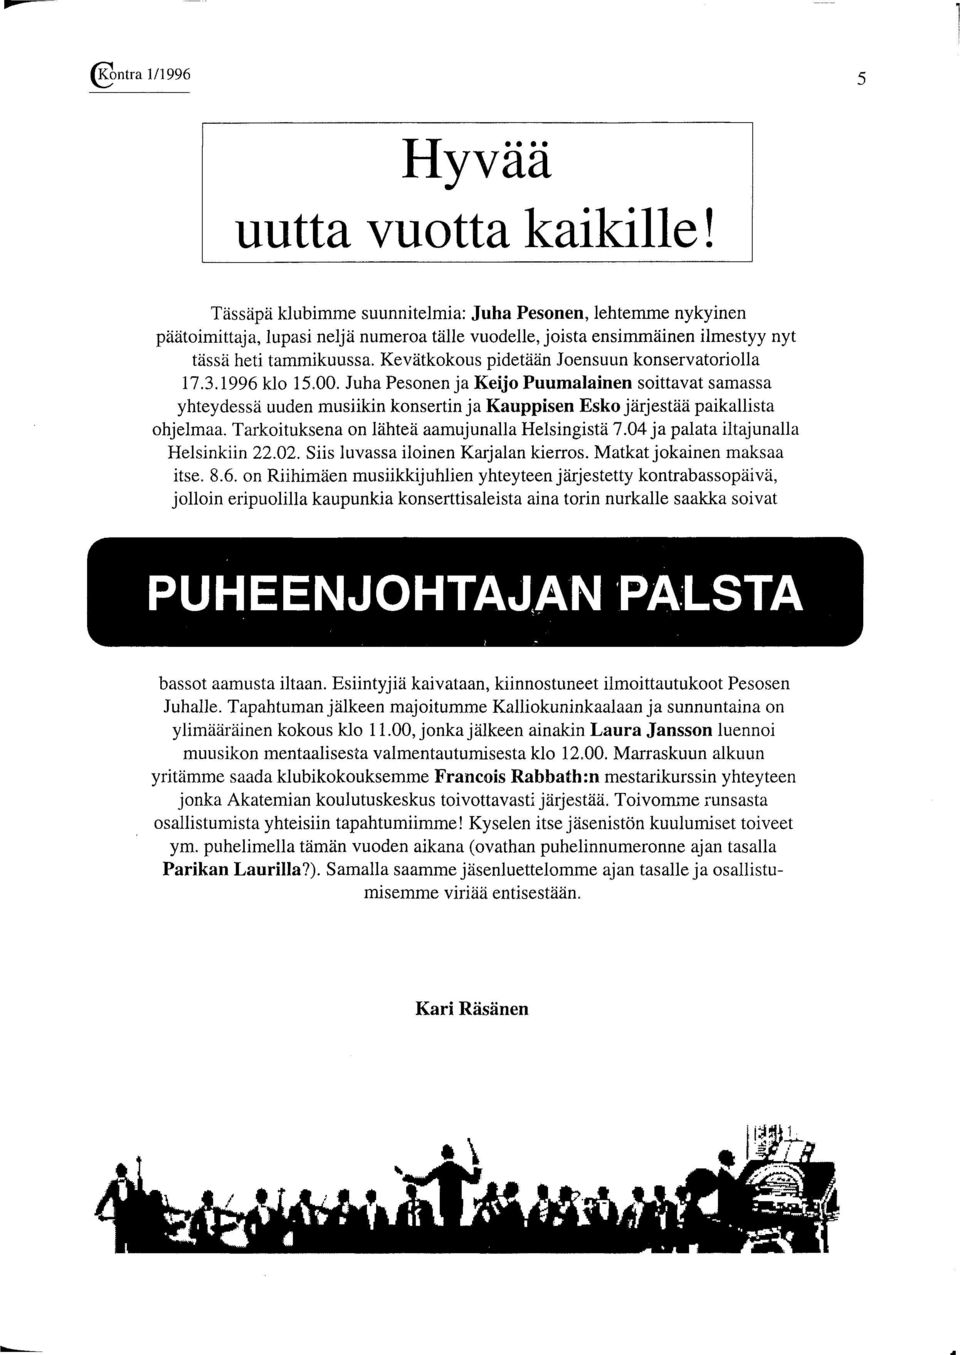 Juha Pesonen ja Keijo Puumalainen soittavat samassa yhteydessä uuden musiikin konsertin ja Kauppisen Esko järjestää paikallista ohjelmaa. Tarkoituksena on lähteä aamujunalla Helsingistä 7.